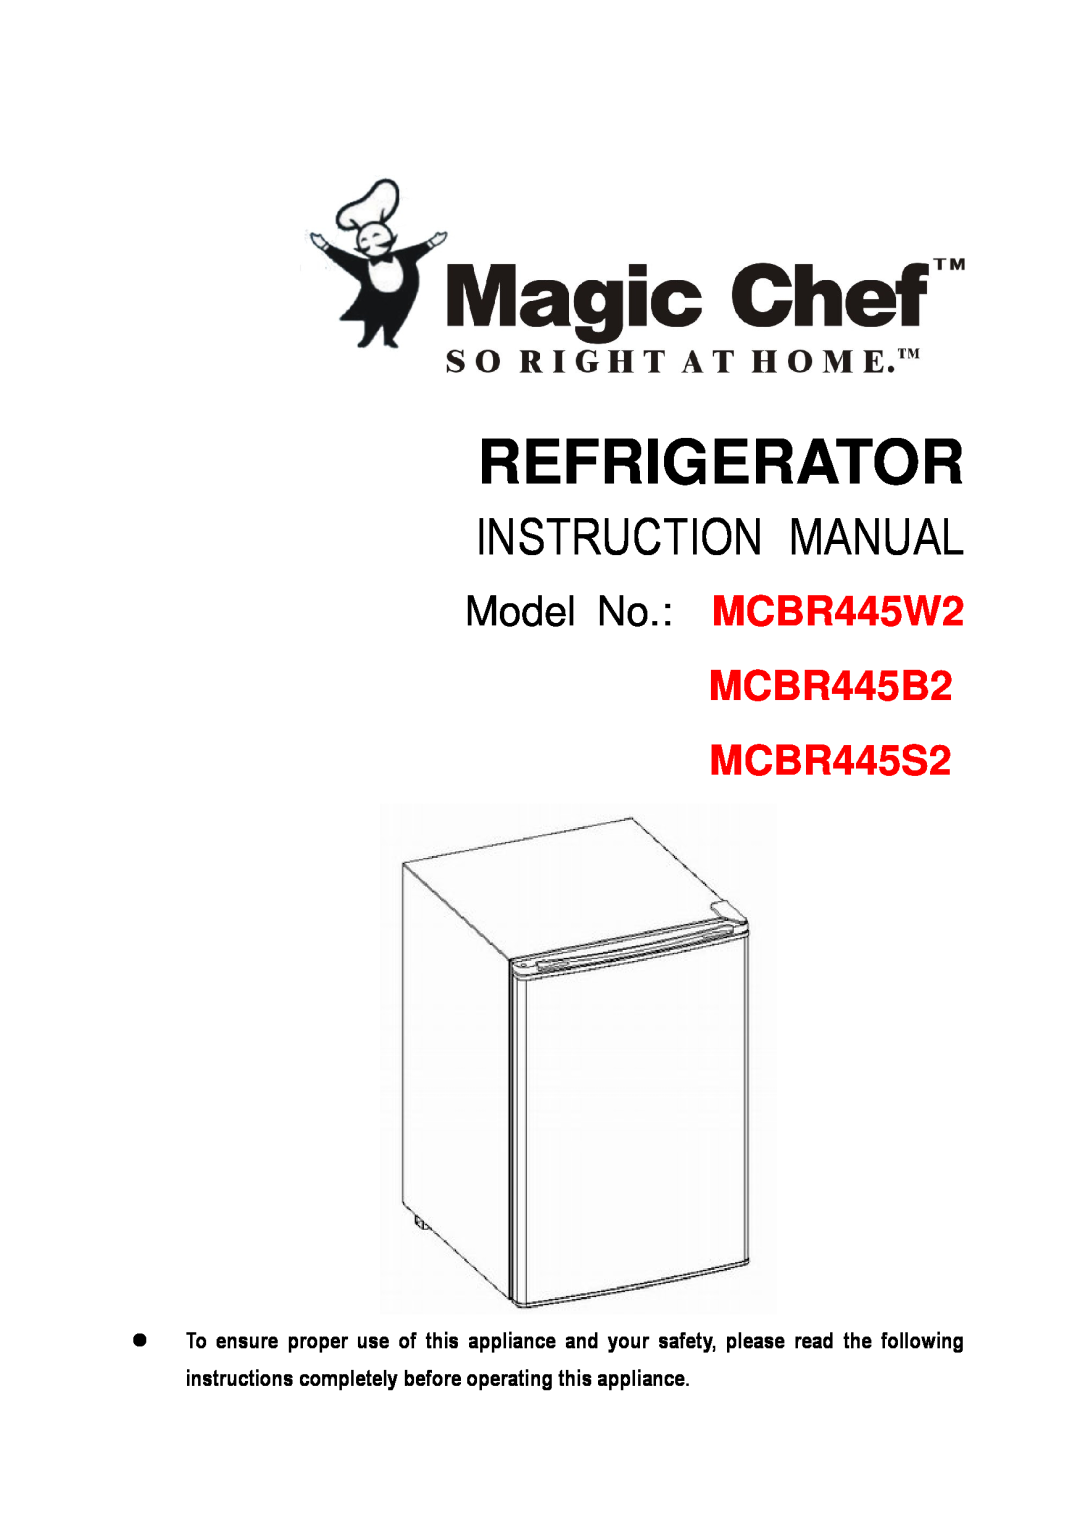 Magic Chef instruction manual Refrigerator, Model No. MCBR445W2, MCBR445B2 MCBR445S2 